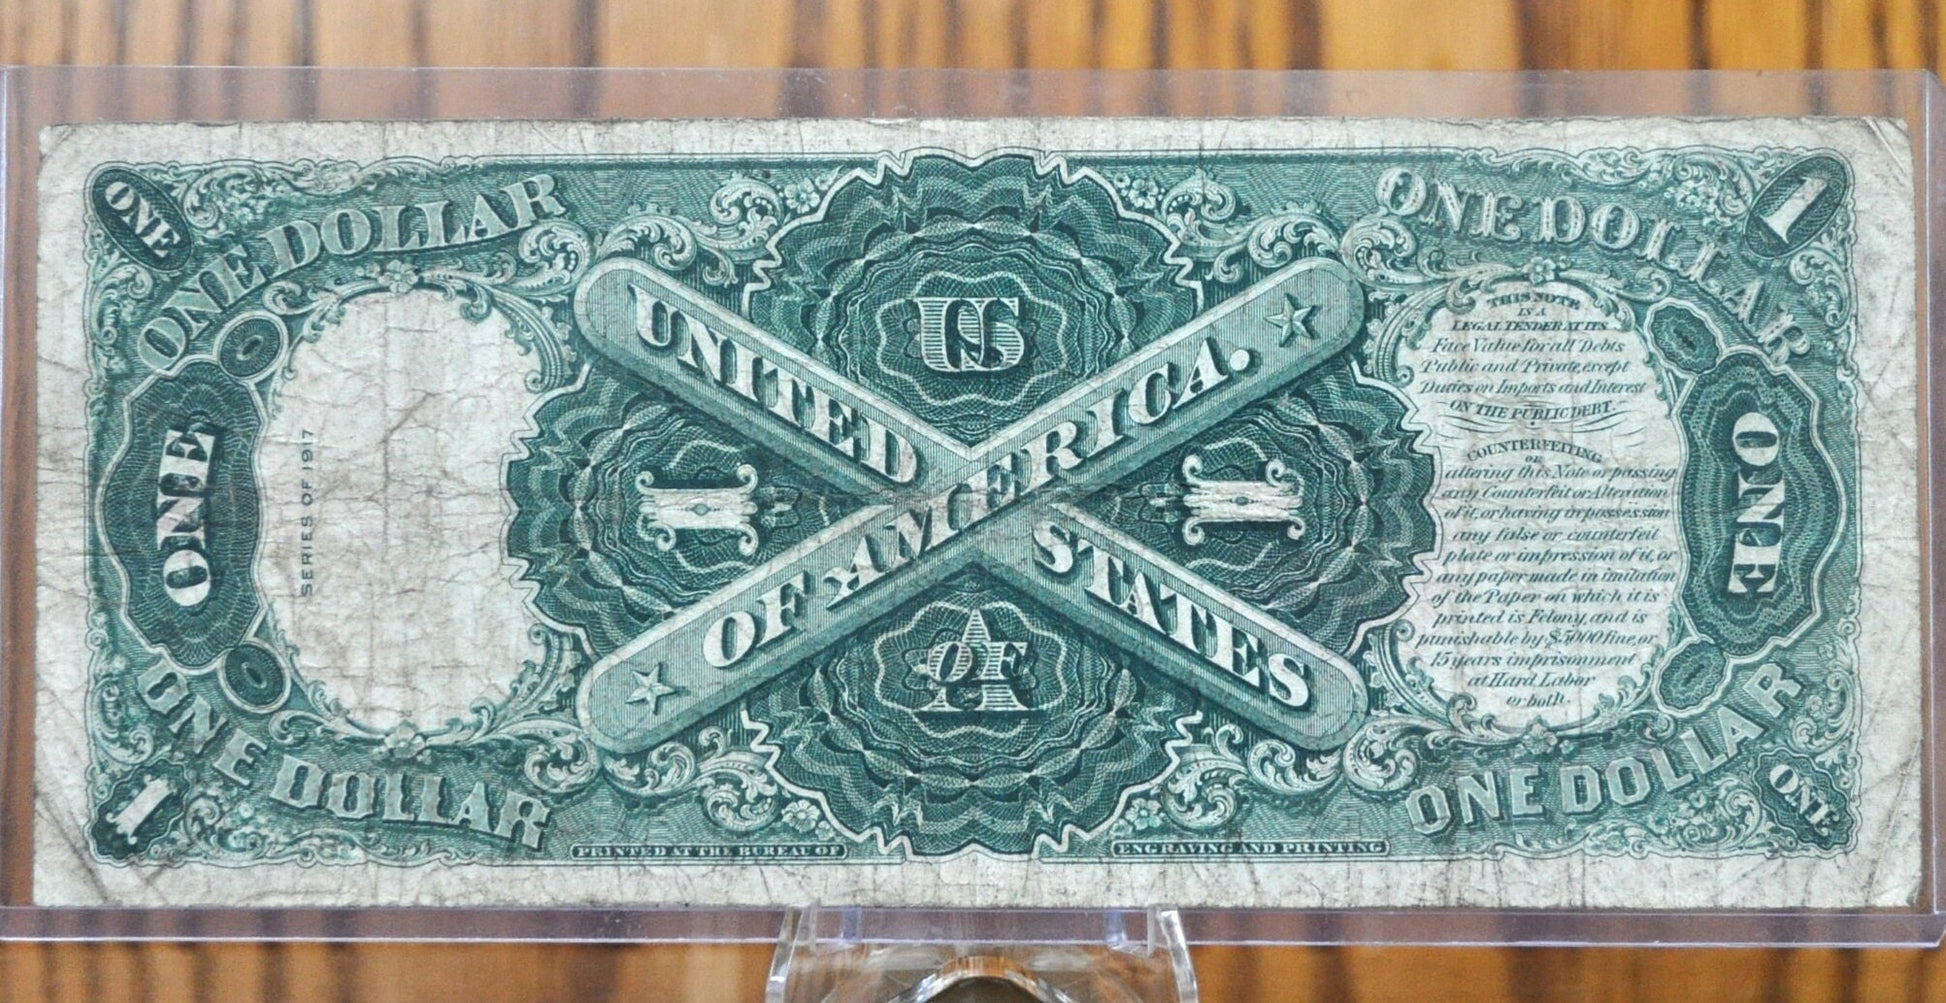 1917 1 Dollar Bill Legal Tender, Fr#36 - F (Fine) Grade / Condition - 1917 Horse Blanket Note 1 Dollar Bill Large 1917 Fr#36 / Fr.36